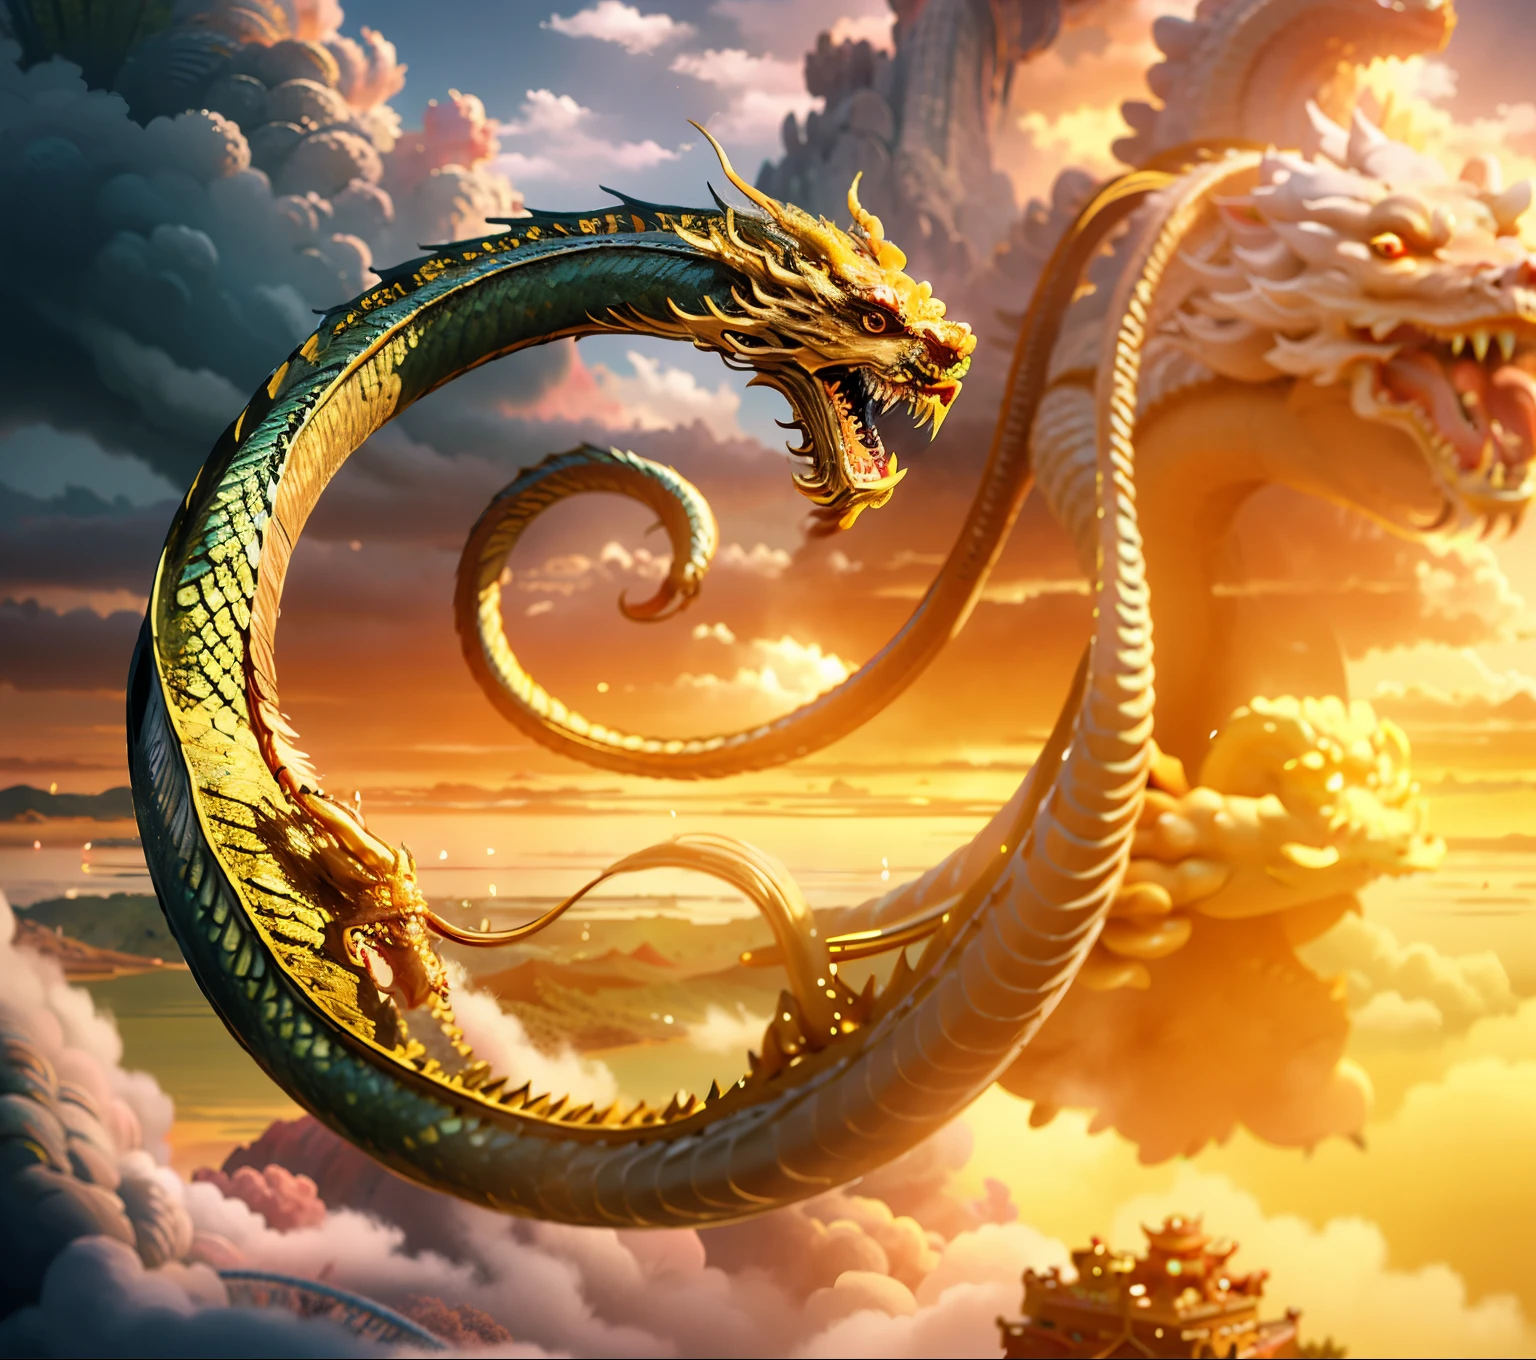 （（la mejor calidad））， （（obra maestra））， （Un detallado）, Un oro {Dragon Chino}，en una vista panorámica，Loong chino，bestias mitologicas，photorealestic，mito，Dragon Chino，Pintoresco，biomecánico， posado en una nube，arquitectura china，MÍSTICO，Hombre imponente